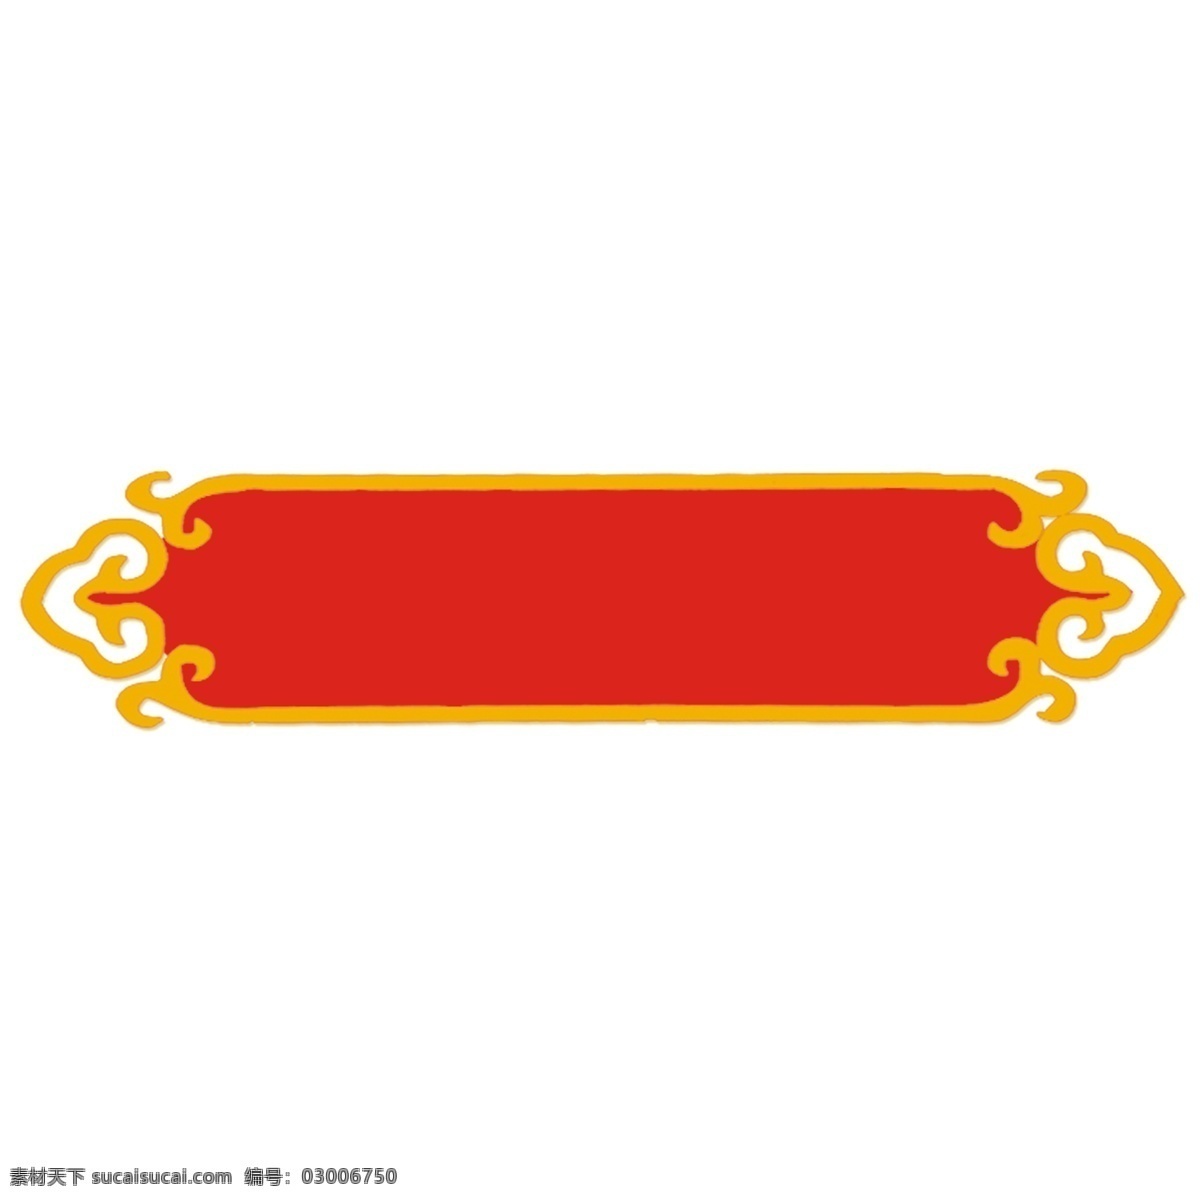 金色 花纹 红色 边框 复古 中国风 金色花纹 设计素材 纹理边框